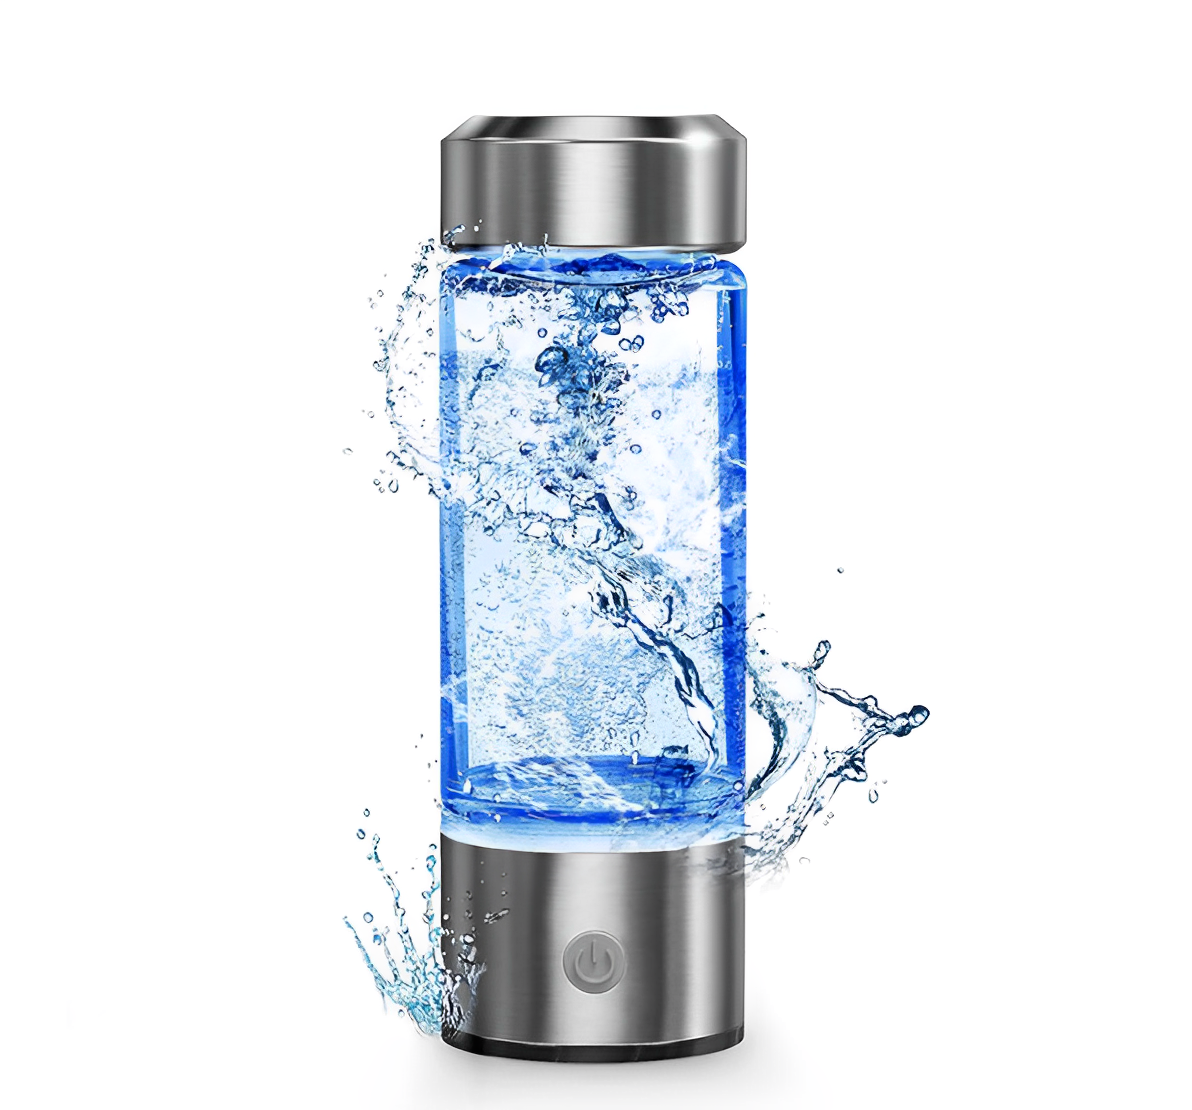 Euphoria Hydrogen Water